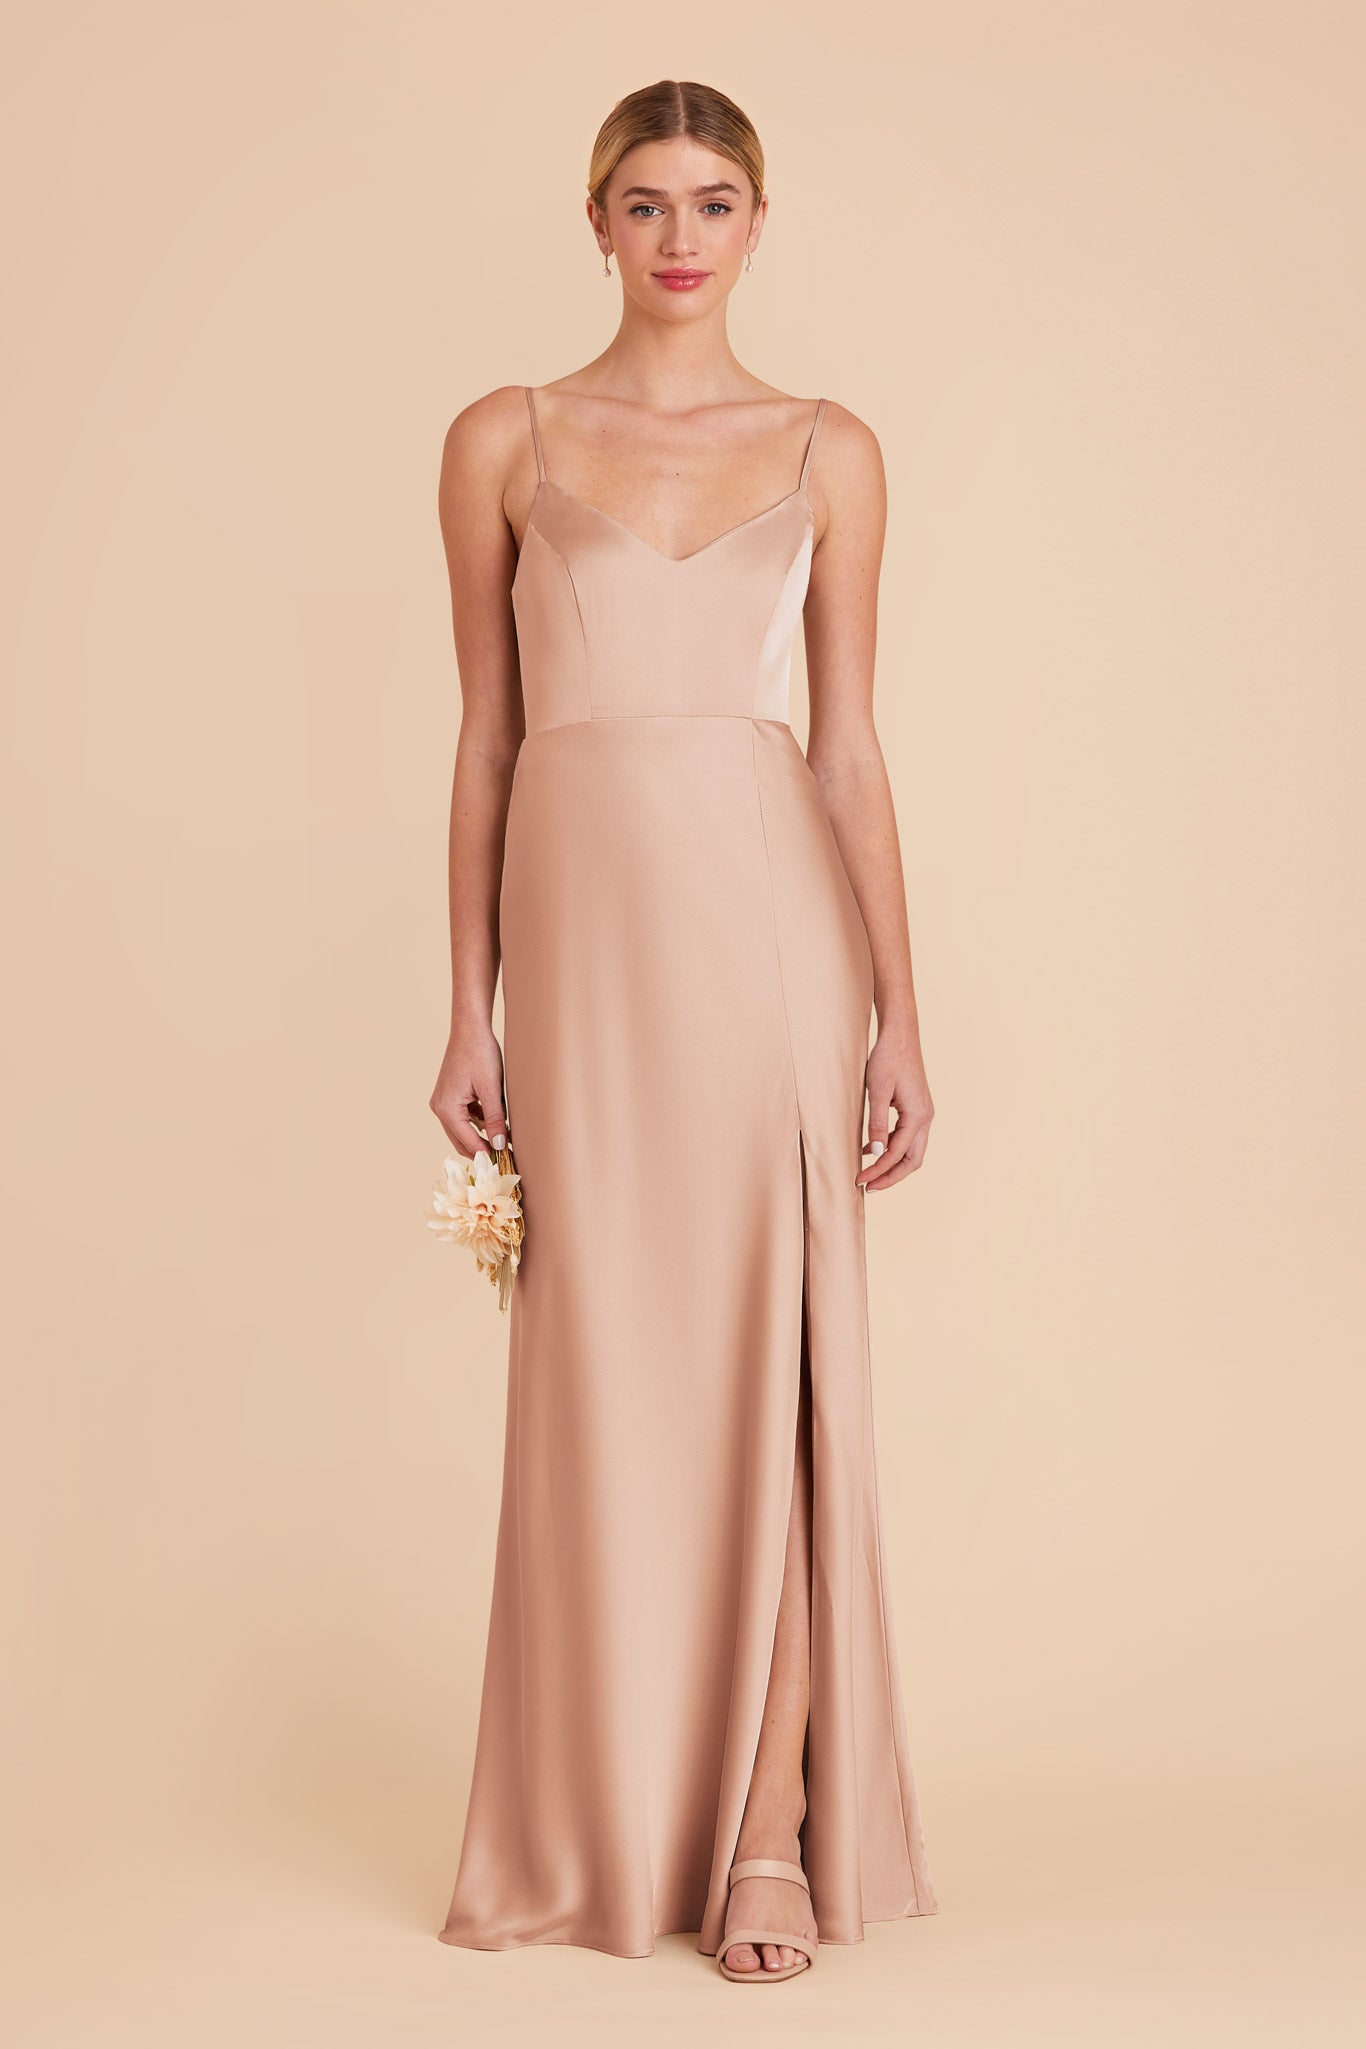 Rose Gold Jay Matte Satin Dress by Birdy Grey